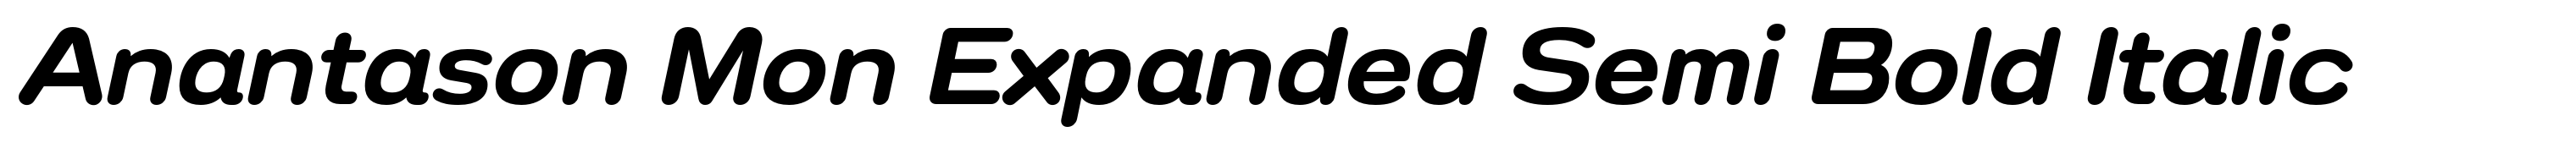 Anantason Mon Expanded Semi Bold Italic